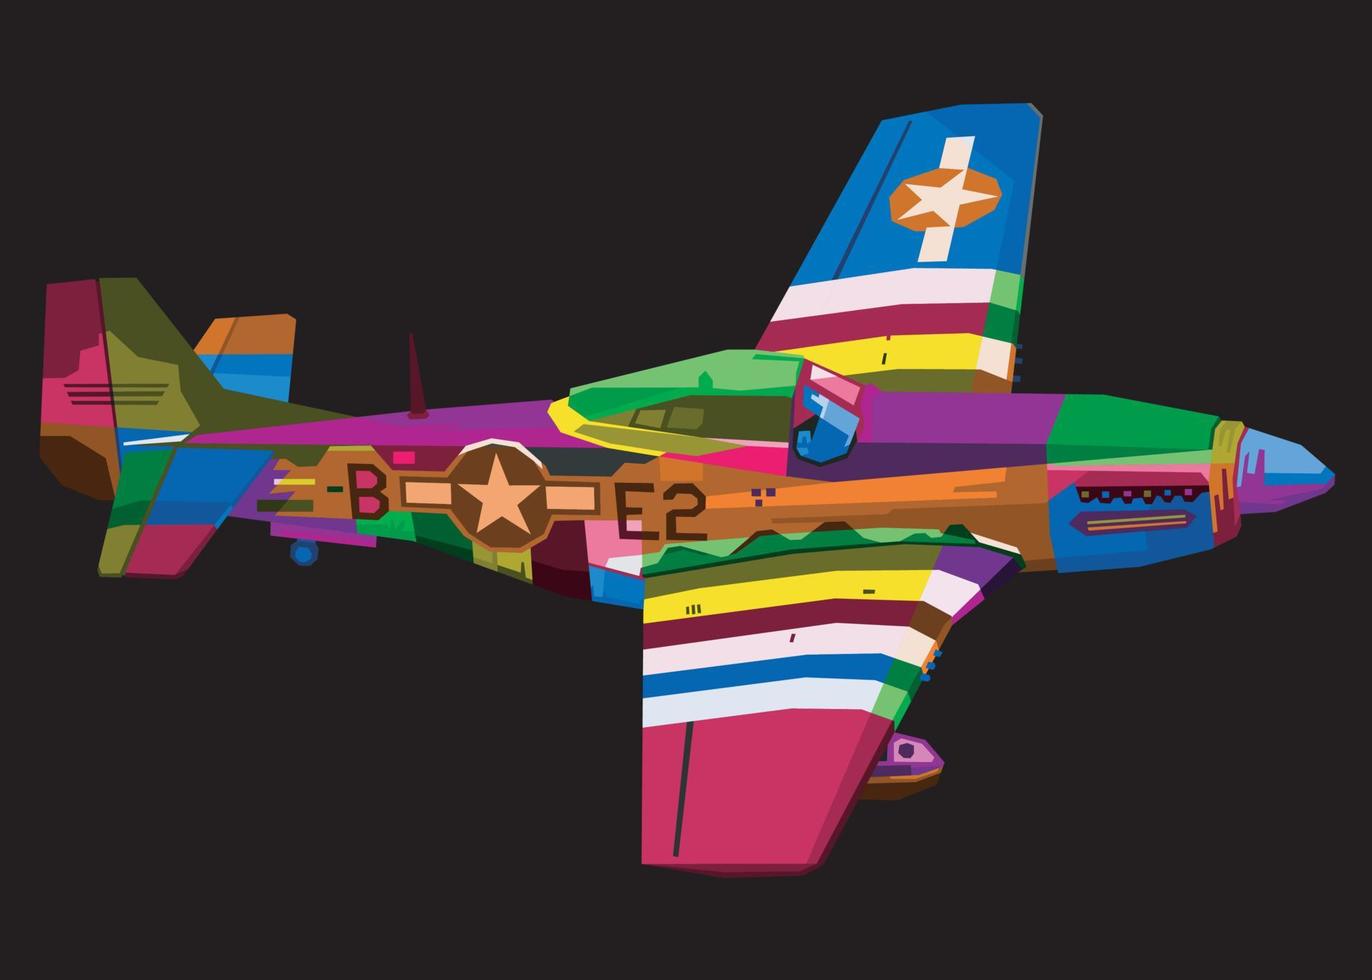 färgrik flygplan i pop- konst stil isolerat på svart bakgrund vektor